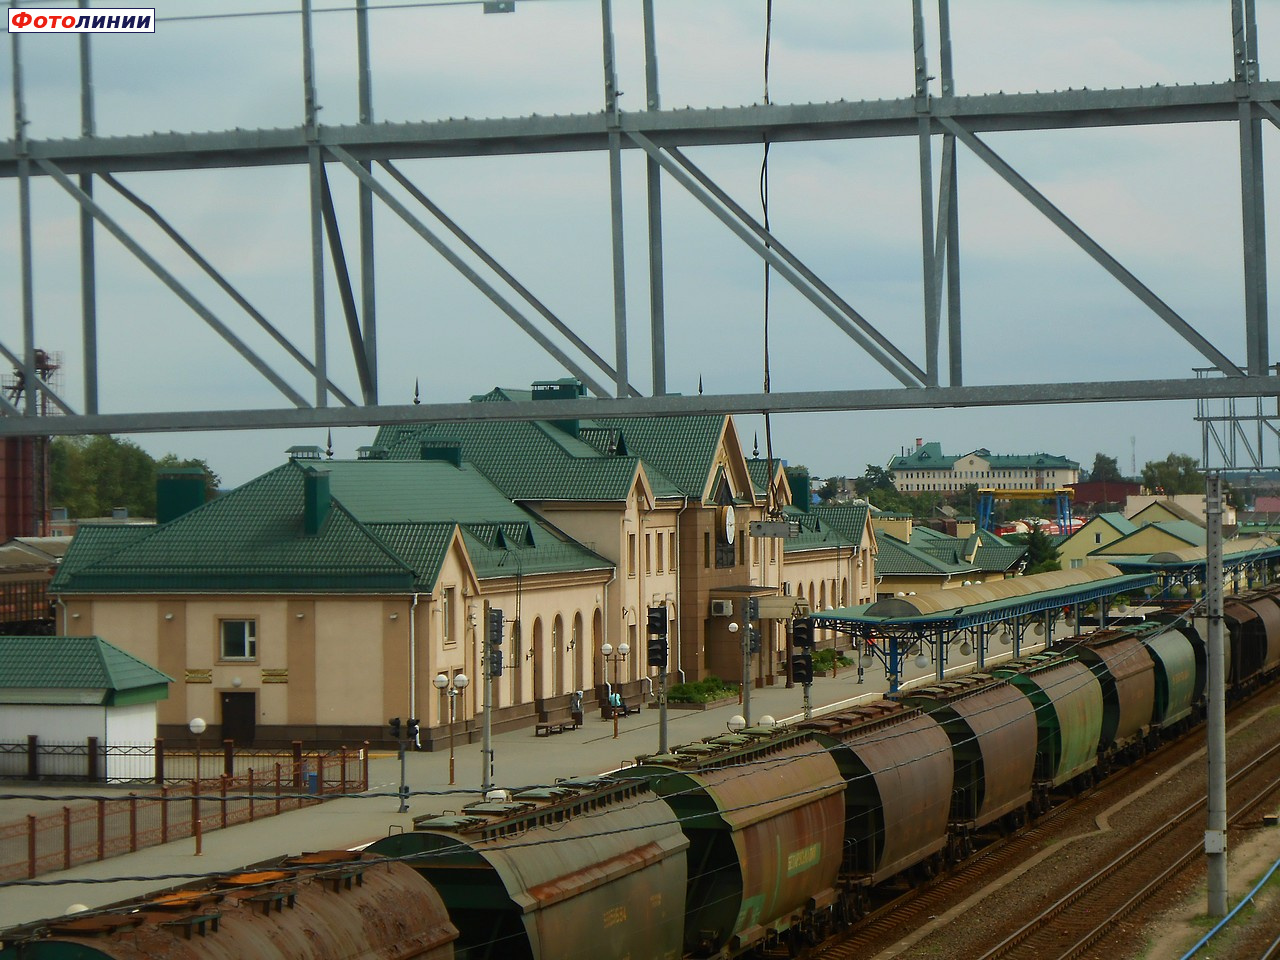 Вокзал, вид с пешеходного моста